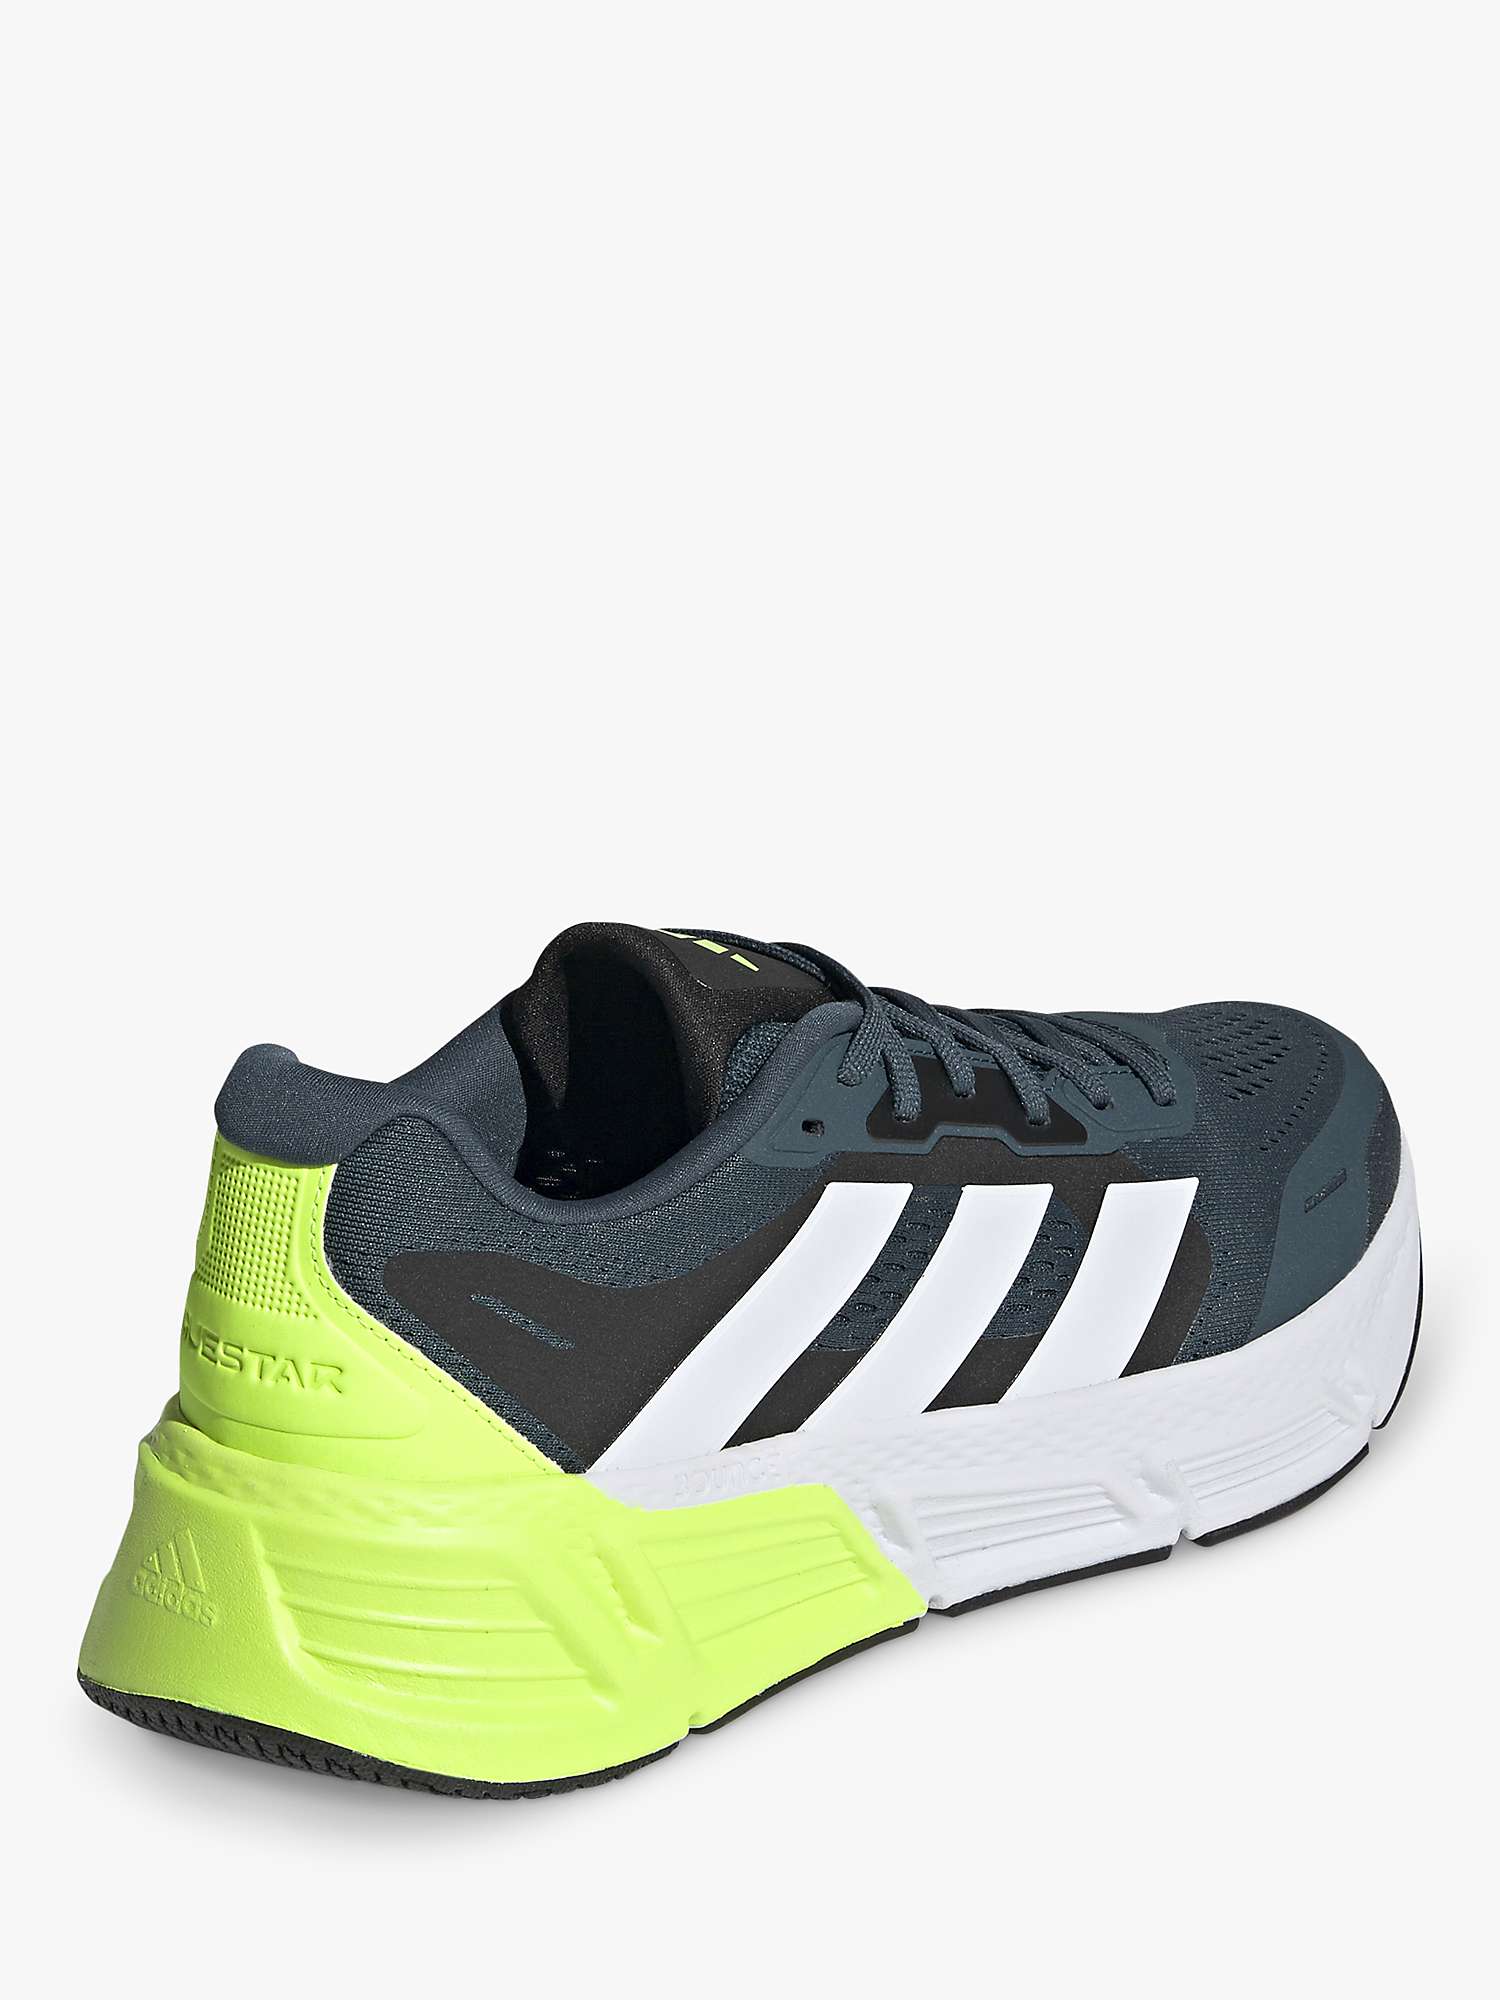 adidas Questar 2 Bounce Men's Running Shoes, White/Lucid Lemon at John ...